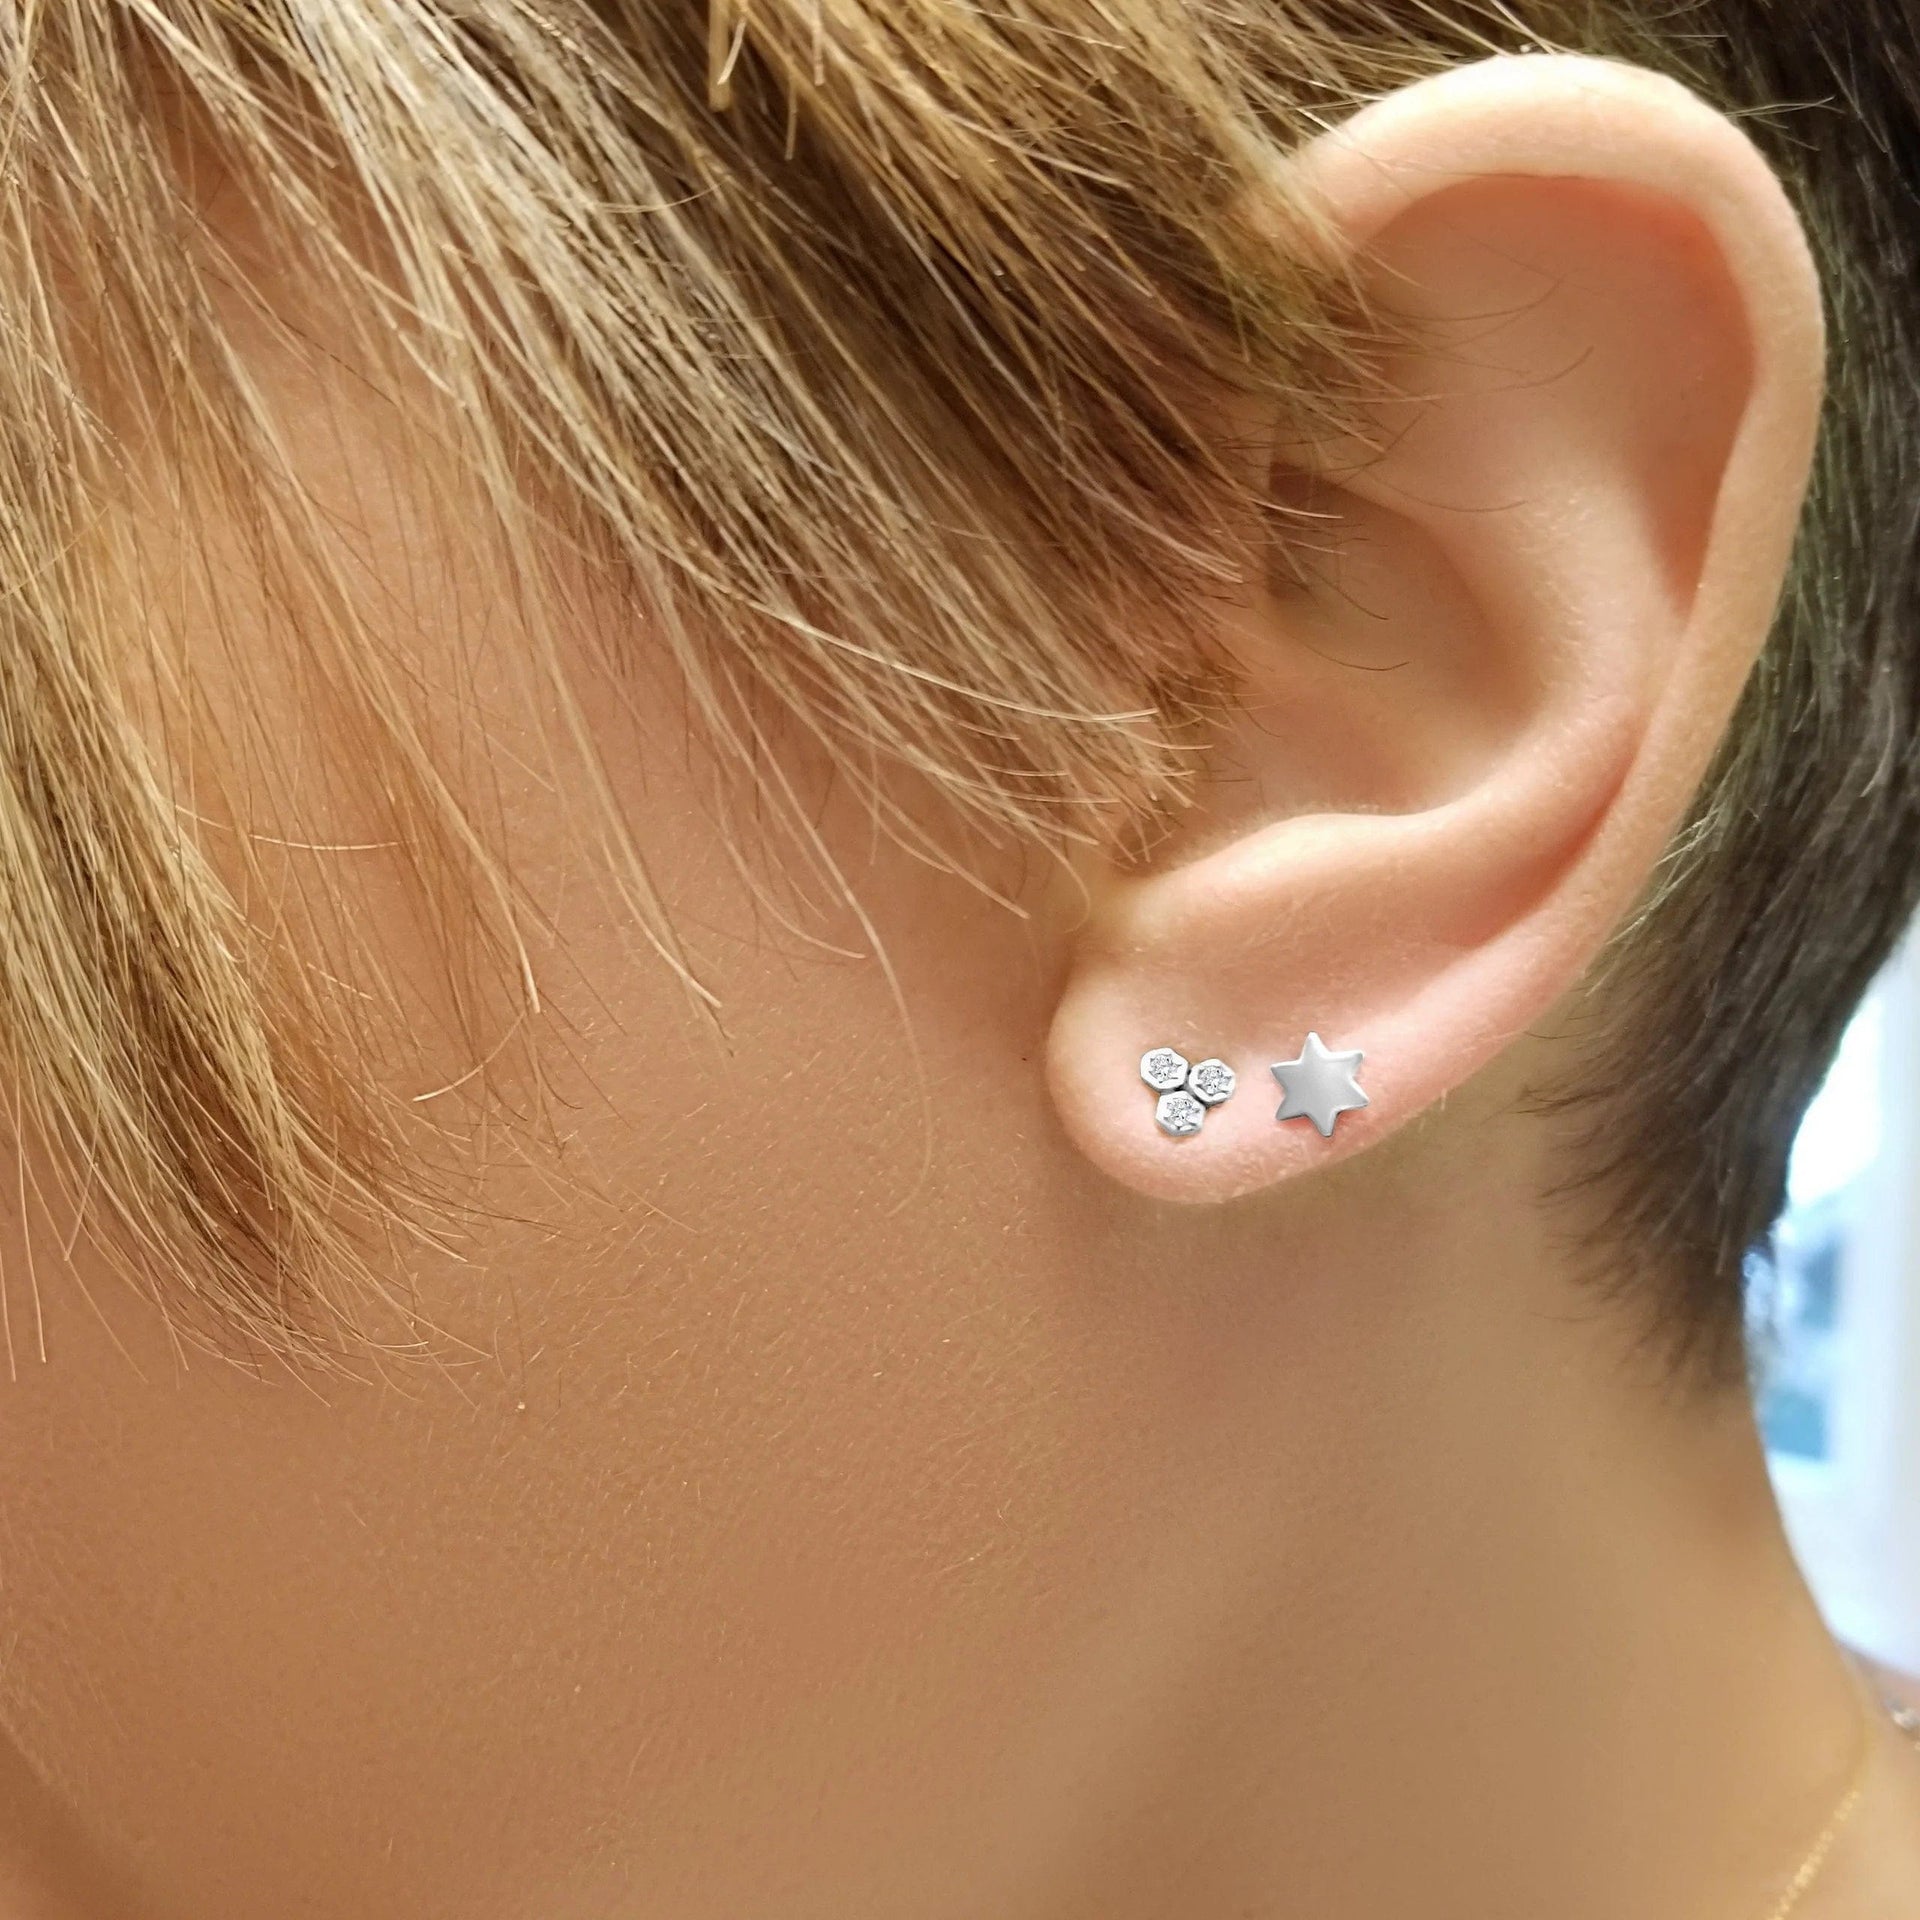 Alef Bet Earrings Blue Opal Sterling Silver Star of David Earrings